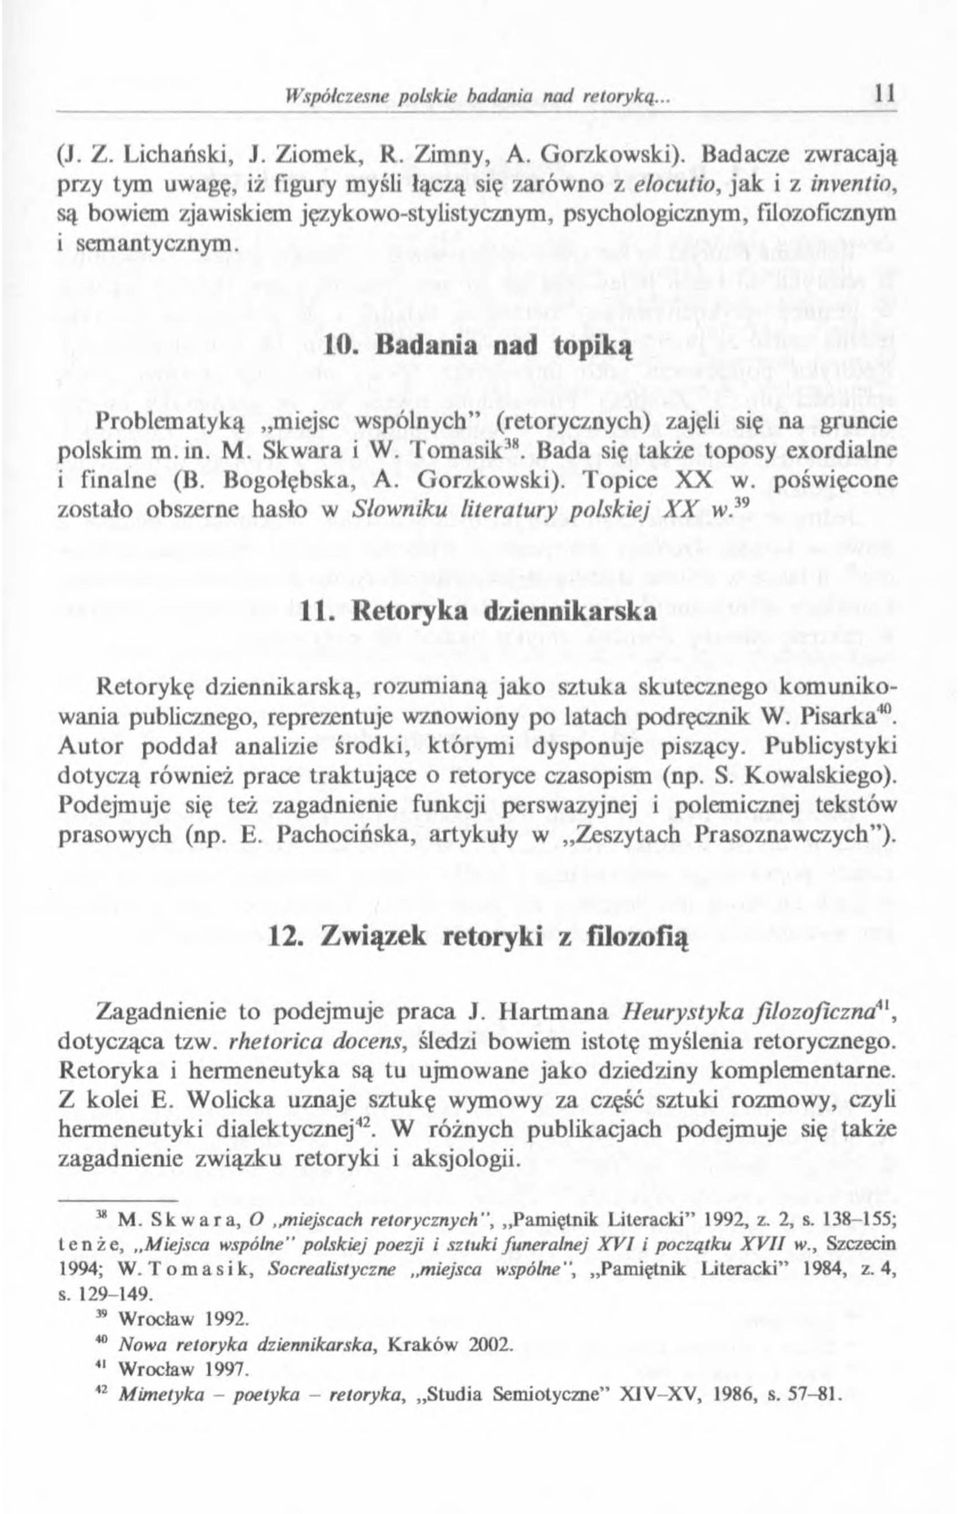 Badania nad topiką Problematyką miejsc wspólnych (retorycznych) zajęli się na gruncie polskim m.in. M. Skwara i W. Tomasik38. Bada się także toposy exordialne i finalne (B. Bogolębska, A. Gorzkowski).